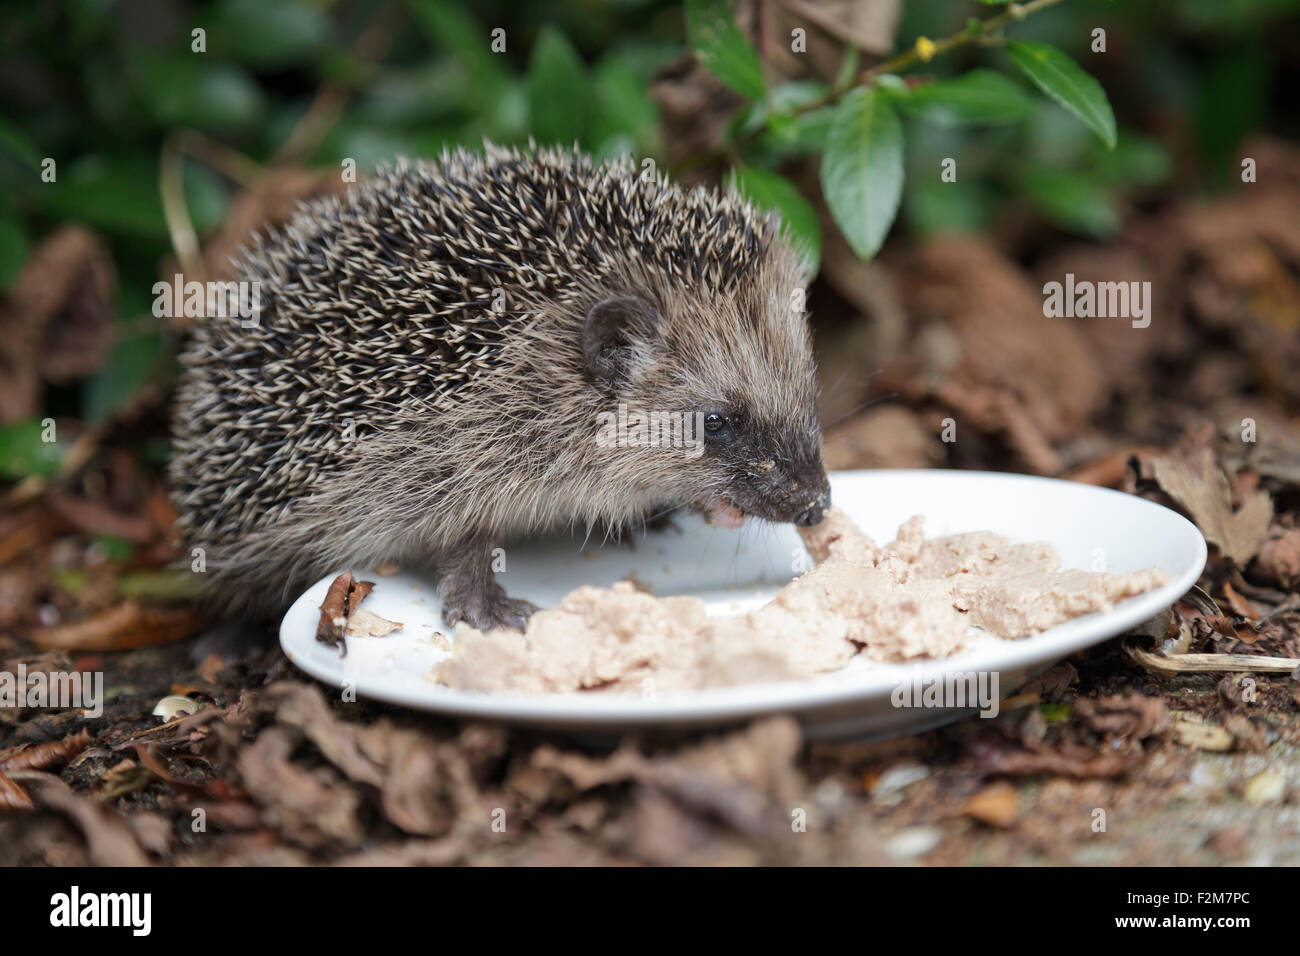 Riccio di mangiare alimenti per gatti off una piastra in un giardino Foto Stock